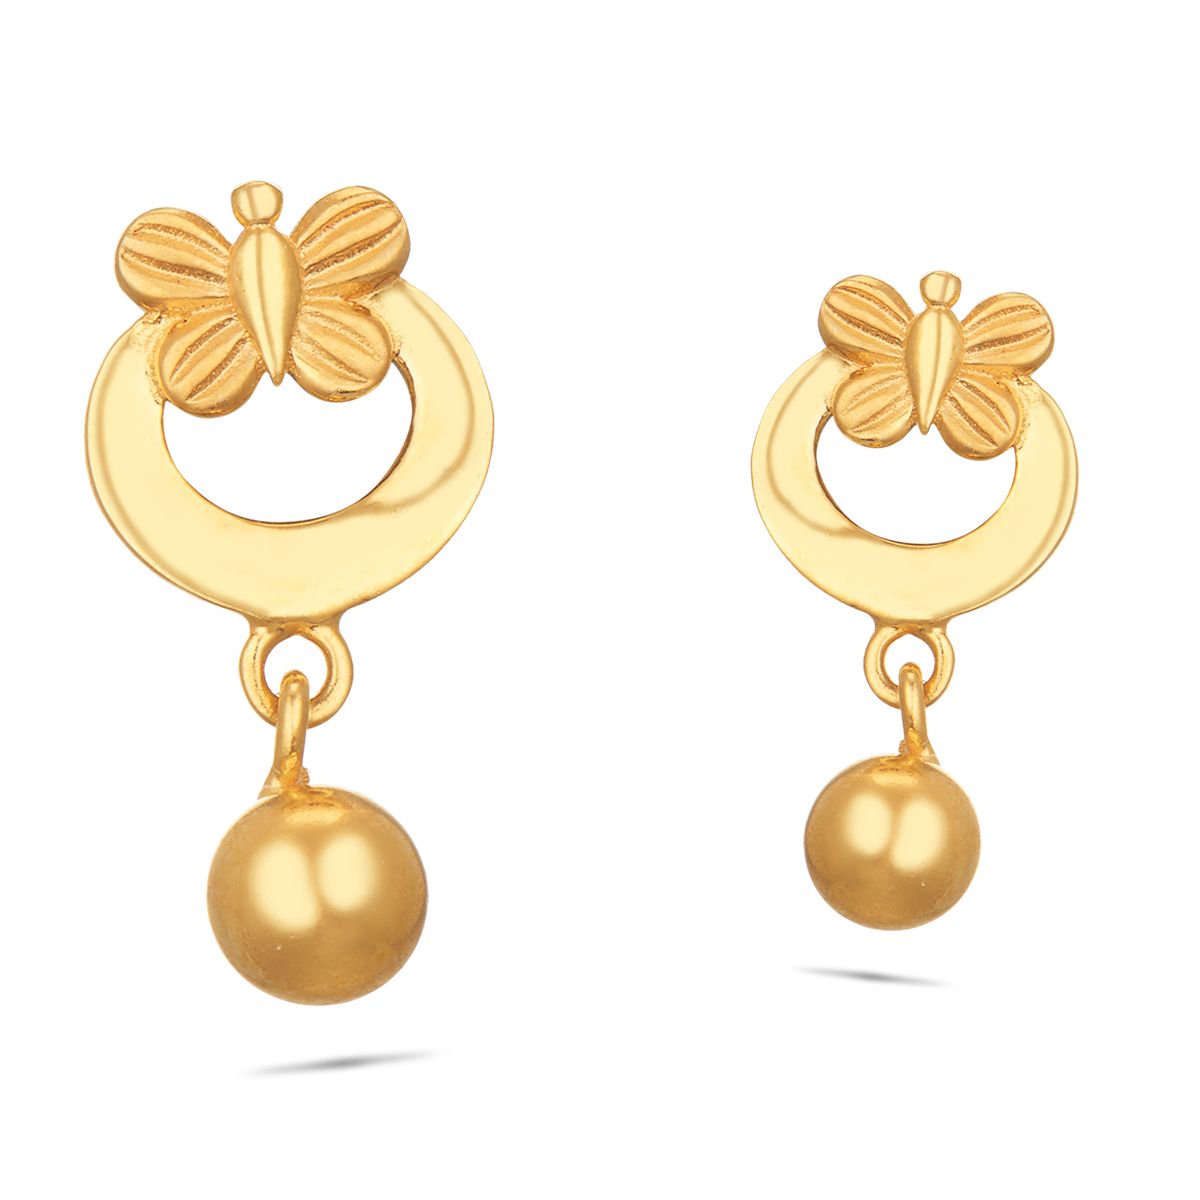 Buy 18KT Gold Kids Conch Shaped Earring - Girl Kid's Earrings